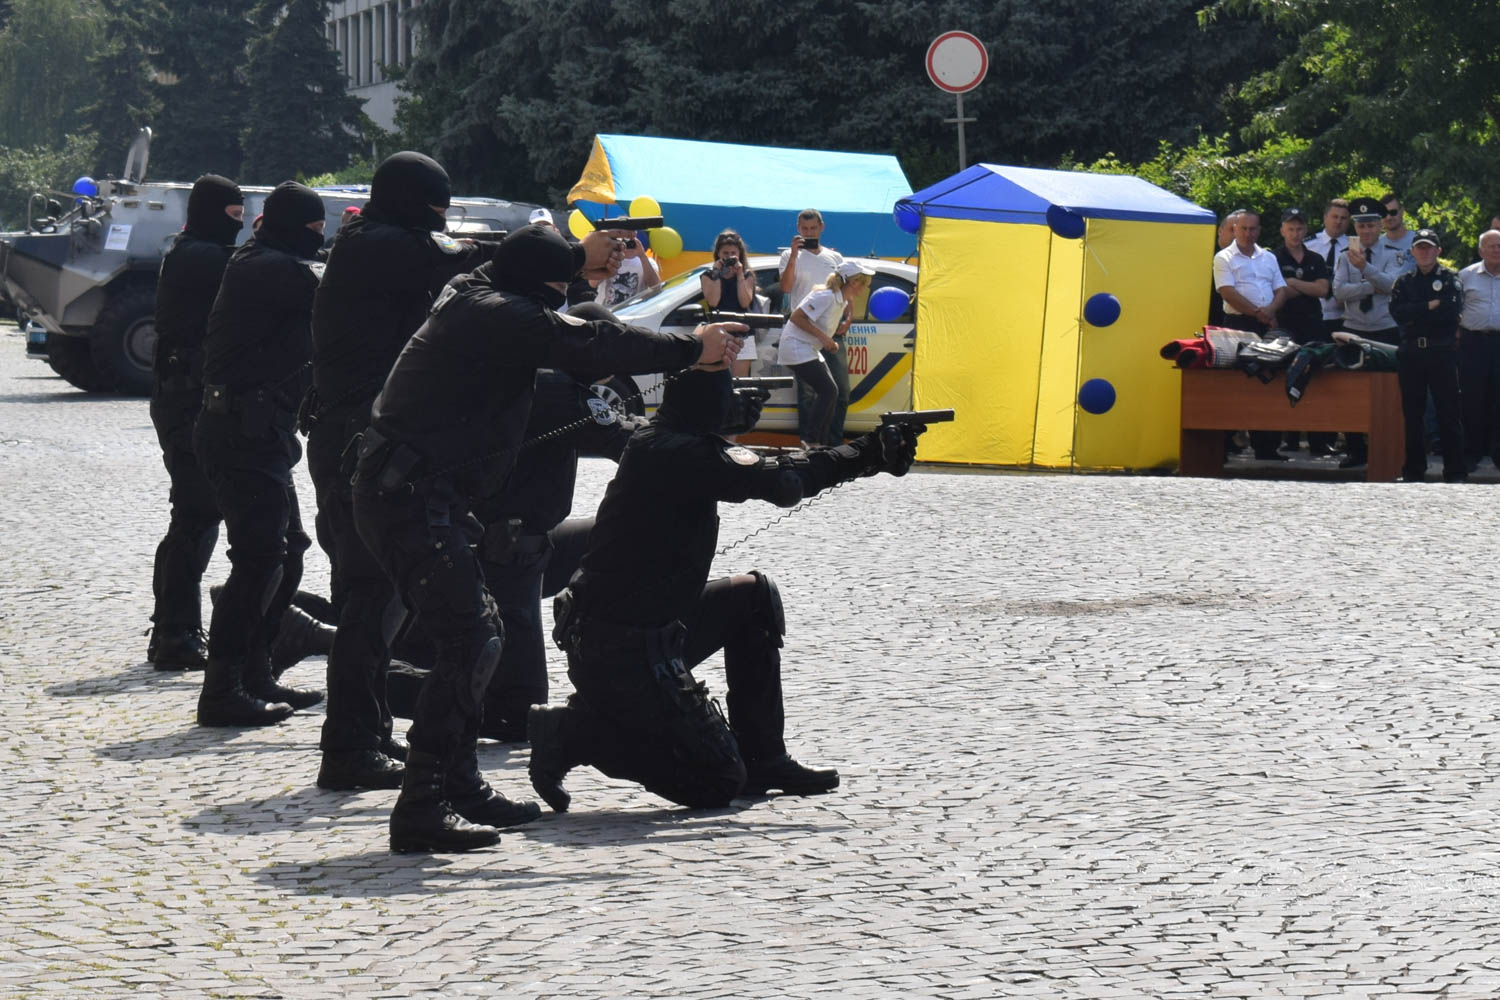  В Ужгороді відбулися урочистості з нагоди 3-ї річниці створення Національної поліції України (ФОТО, ВІДЕО)